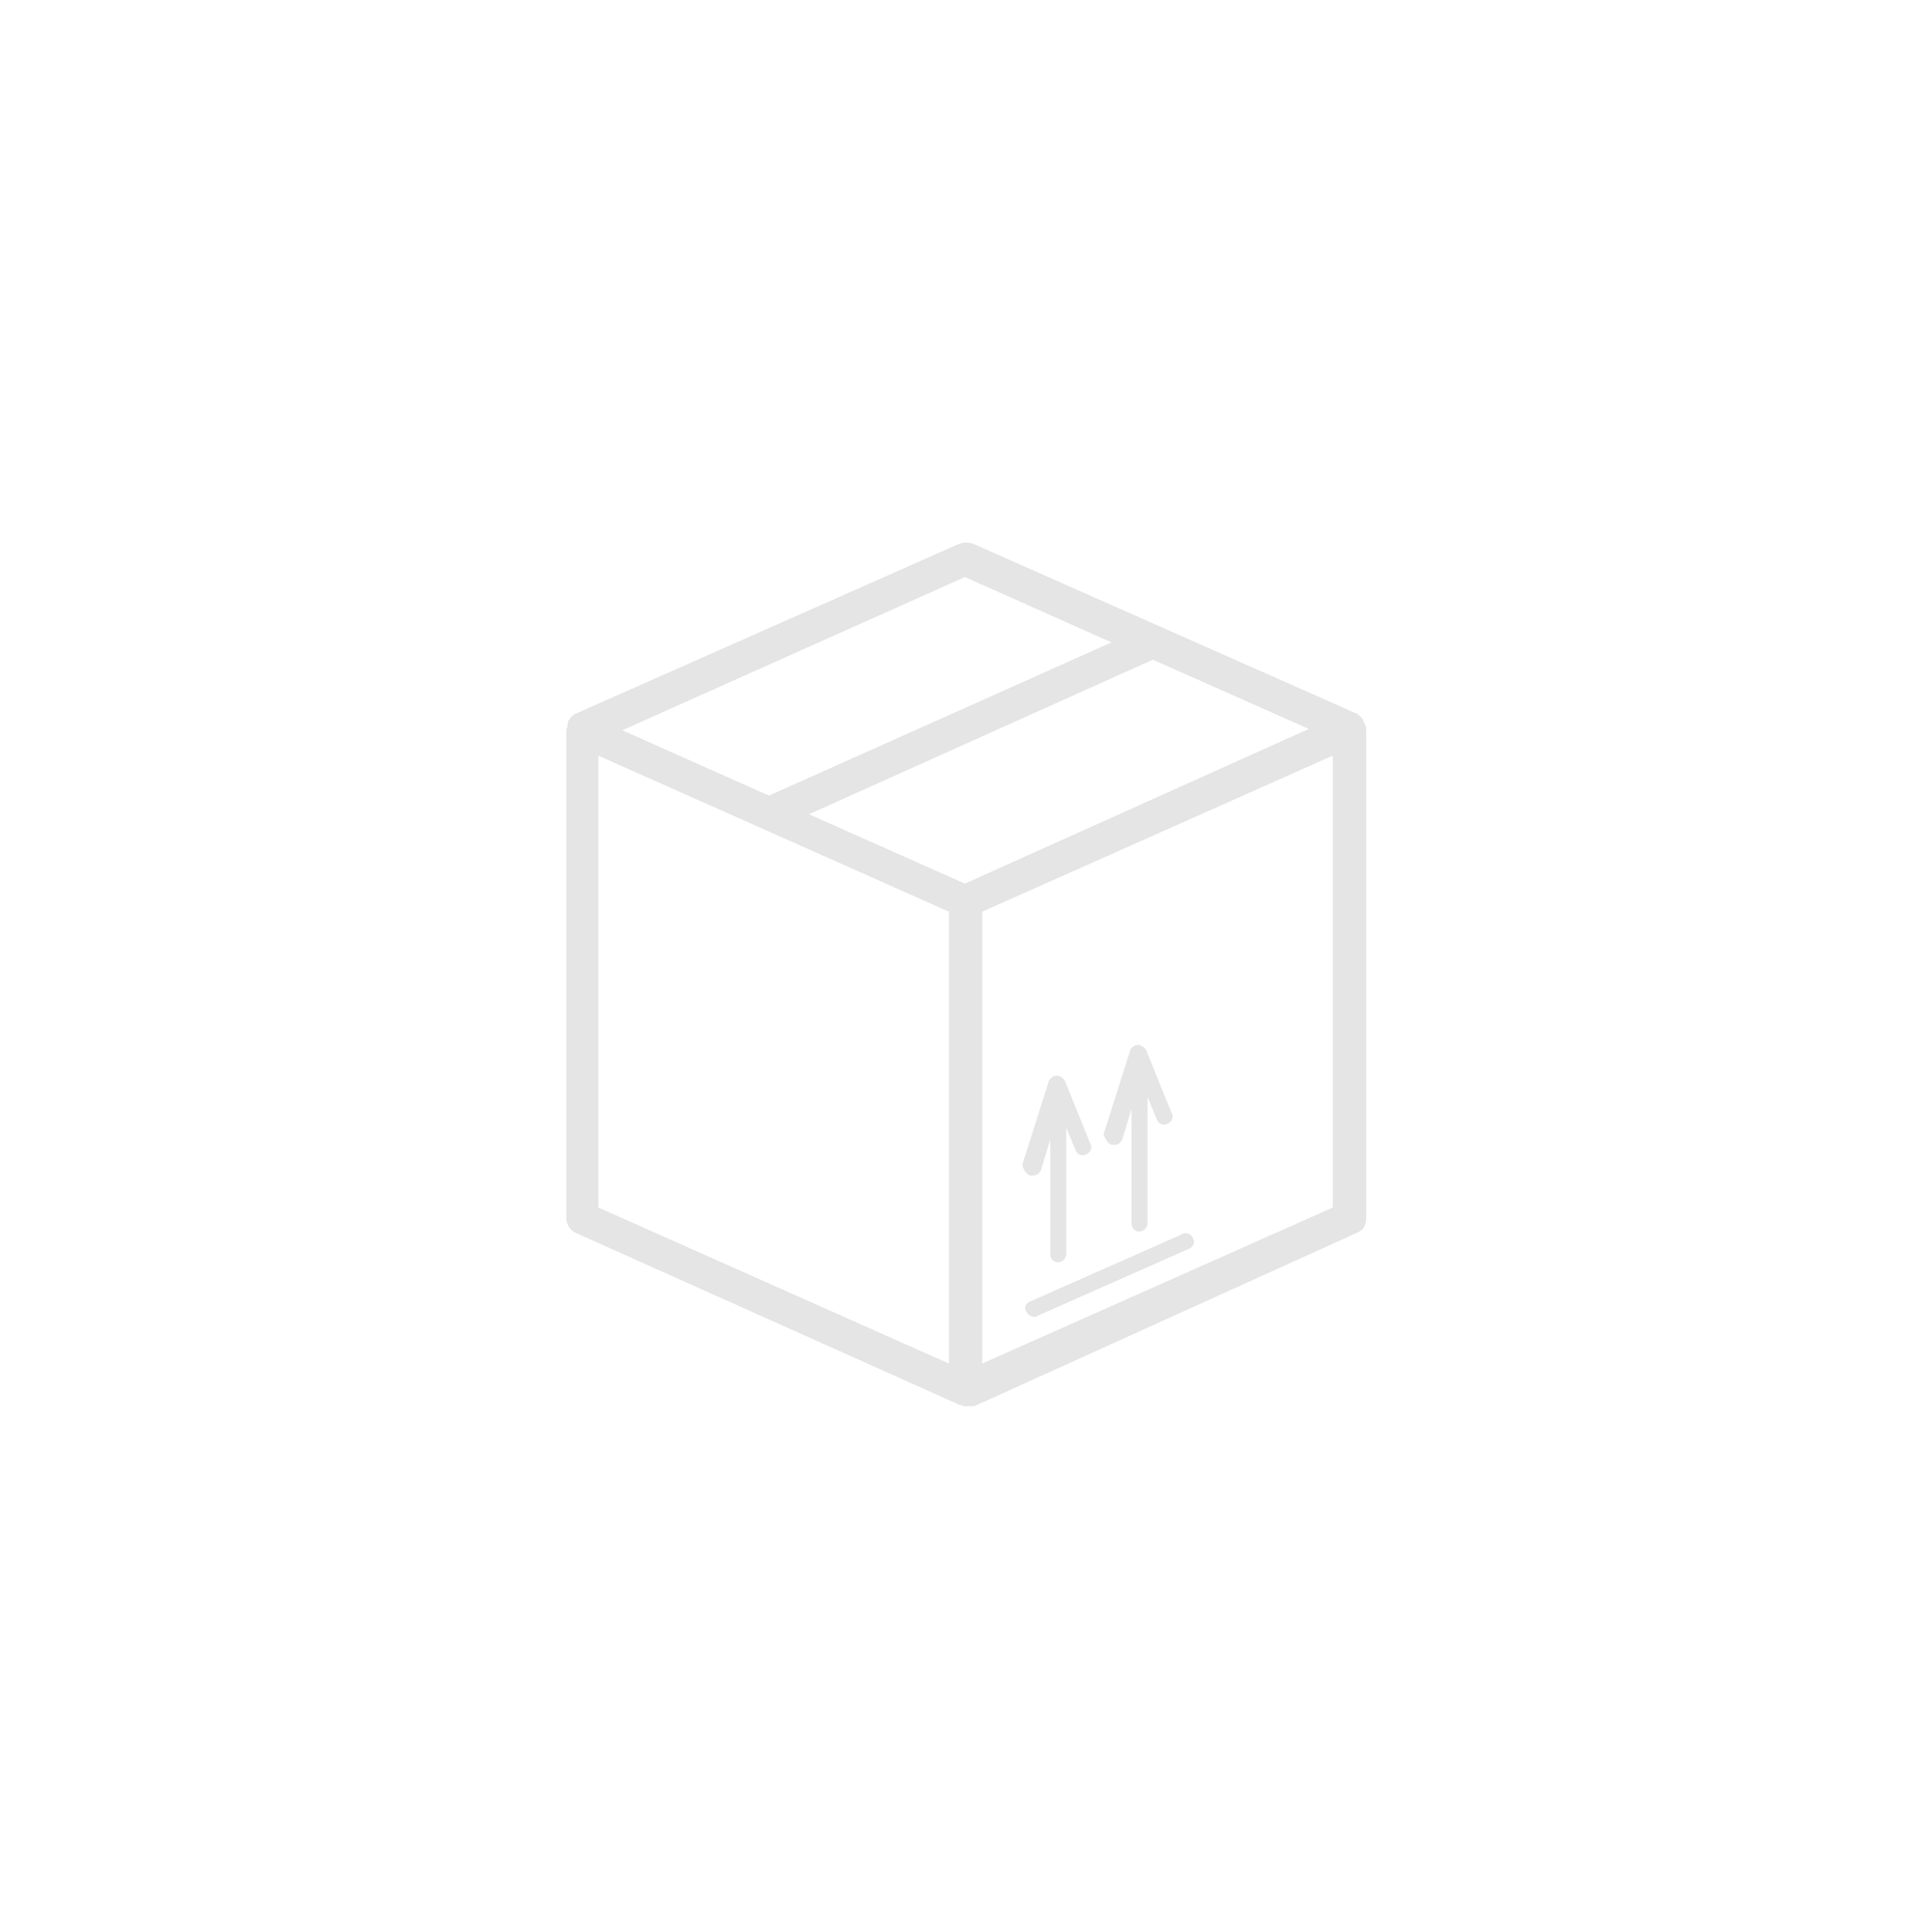 Łącznik świecznikowy+gniazdo zasilające francuskie, pion, z ochroną styków TEKNO 05-3521-143, czarny | 25362 Kanlux